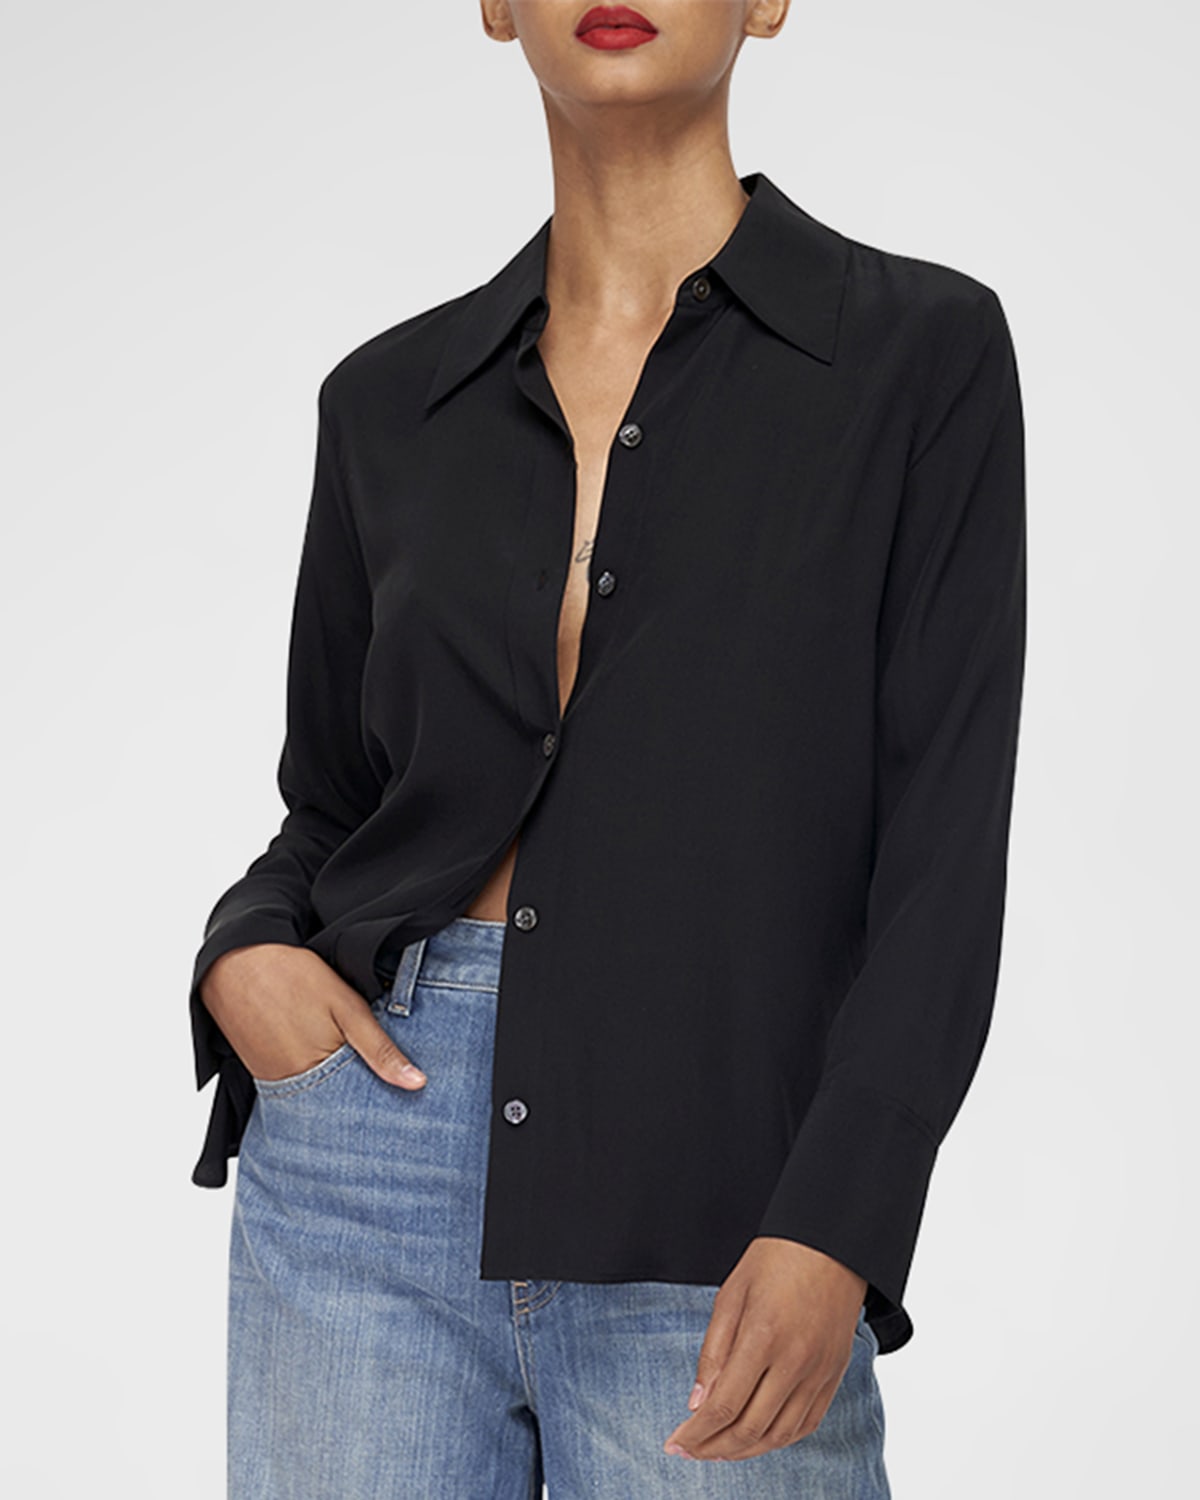 Equipment Essential Long-Sleeve Silk Shirtdress | Neiman Marcus